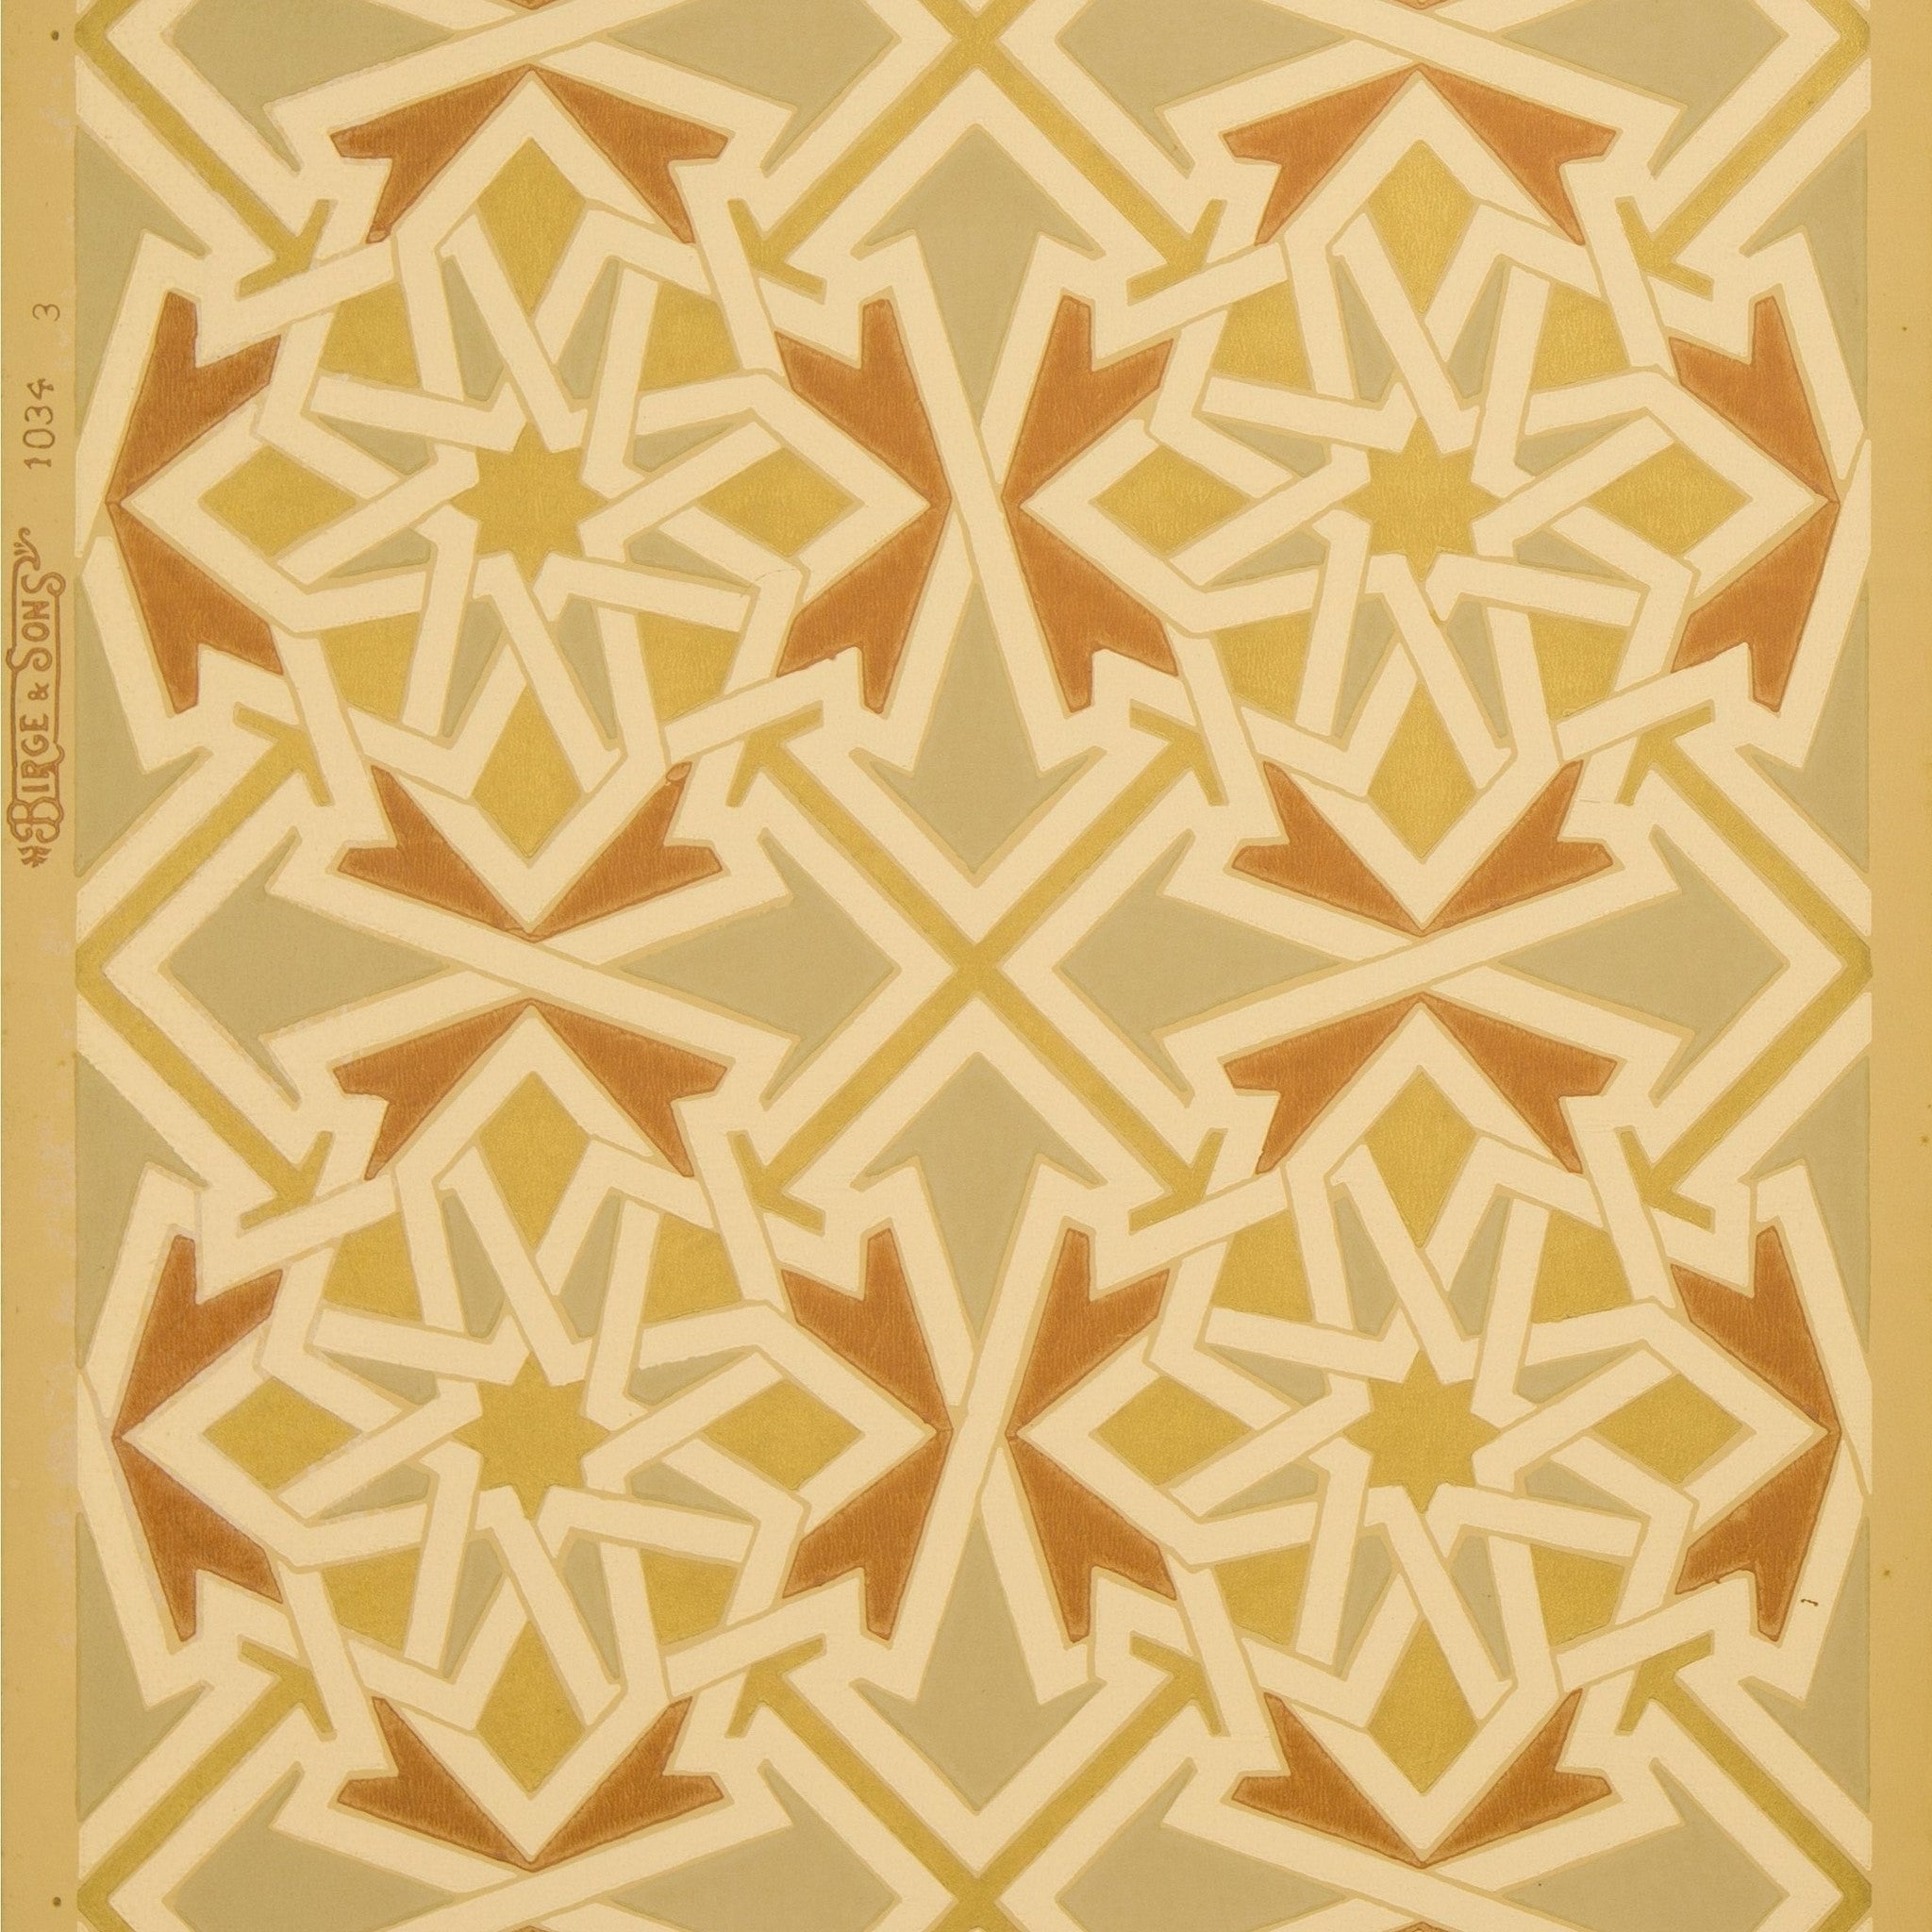 interlocking tile patterns